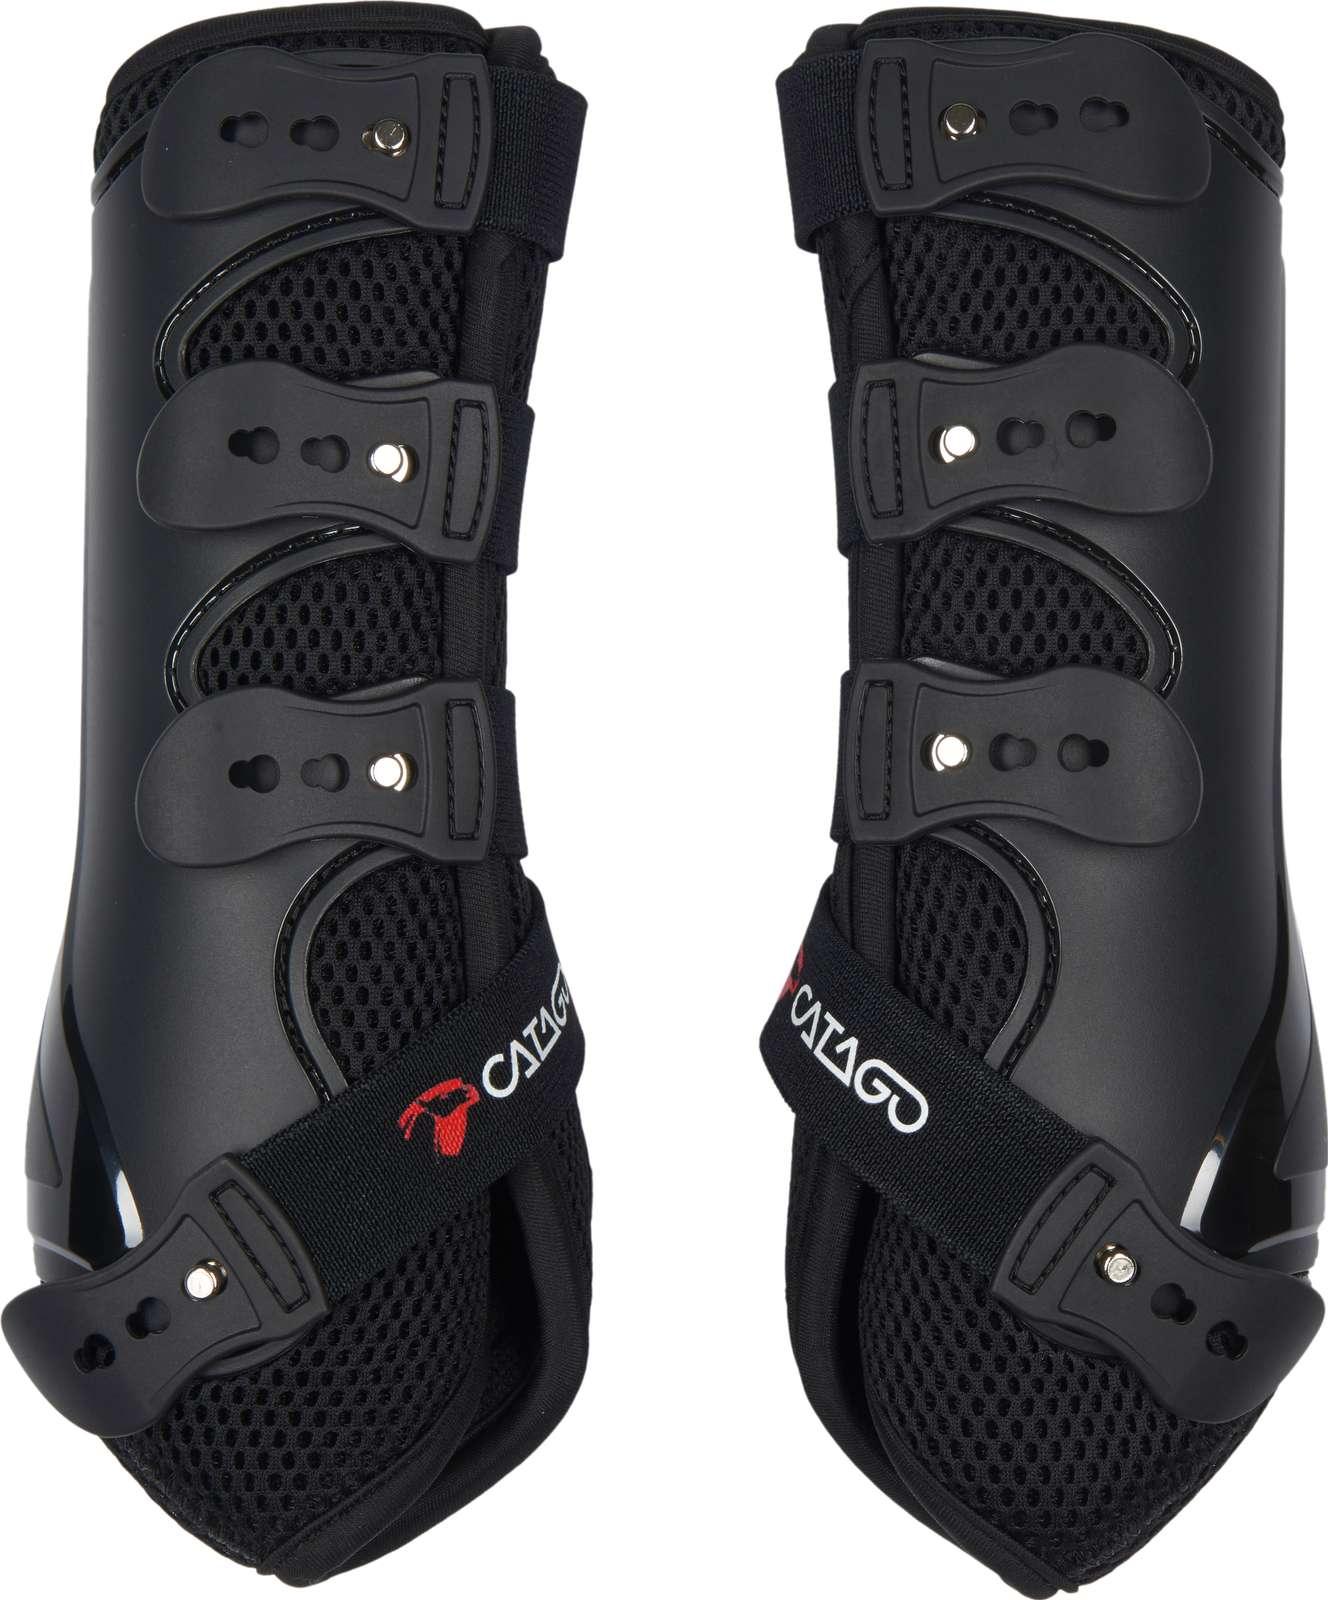 Catago fir tech healing dr boots